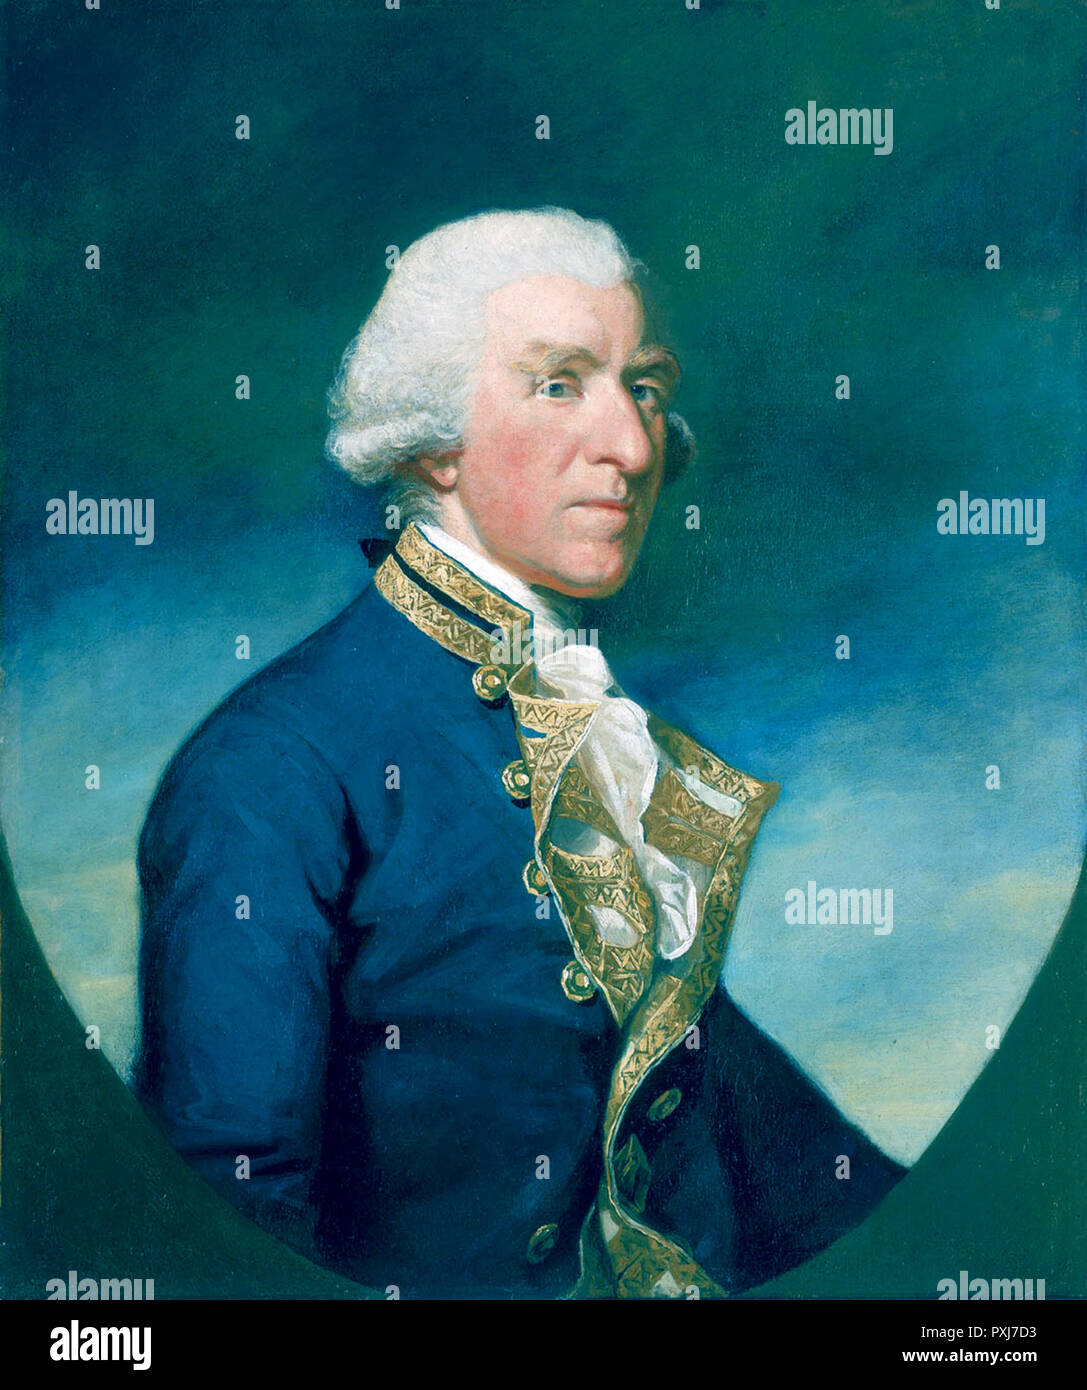 Admiral Samuel Hood, 1st Viscount Haube (1724 - 1816) der Royal Navy Officer. Als Junior Officer er Maßnahmen im Österreichischen Erbfolgekrieg sah. Stockfoto